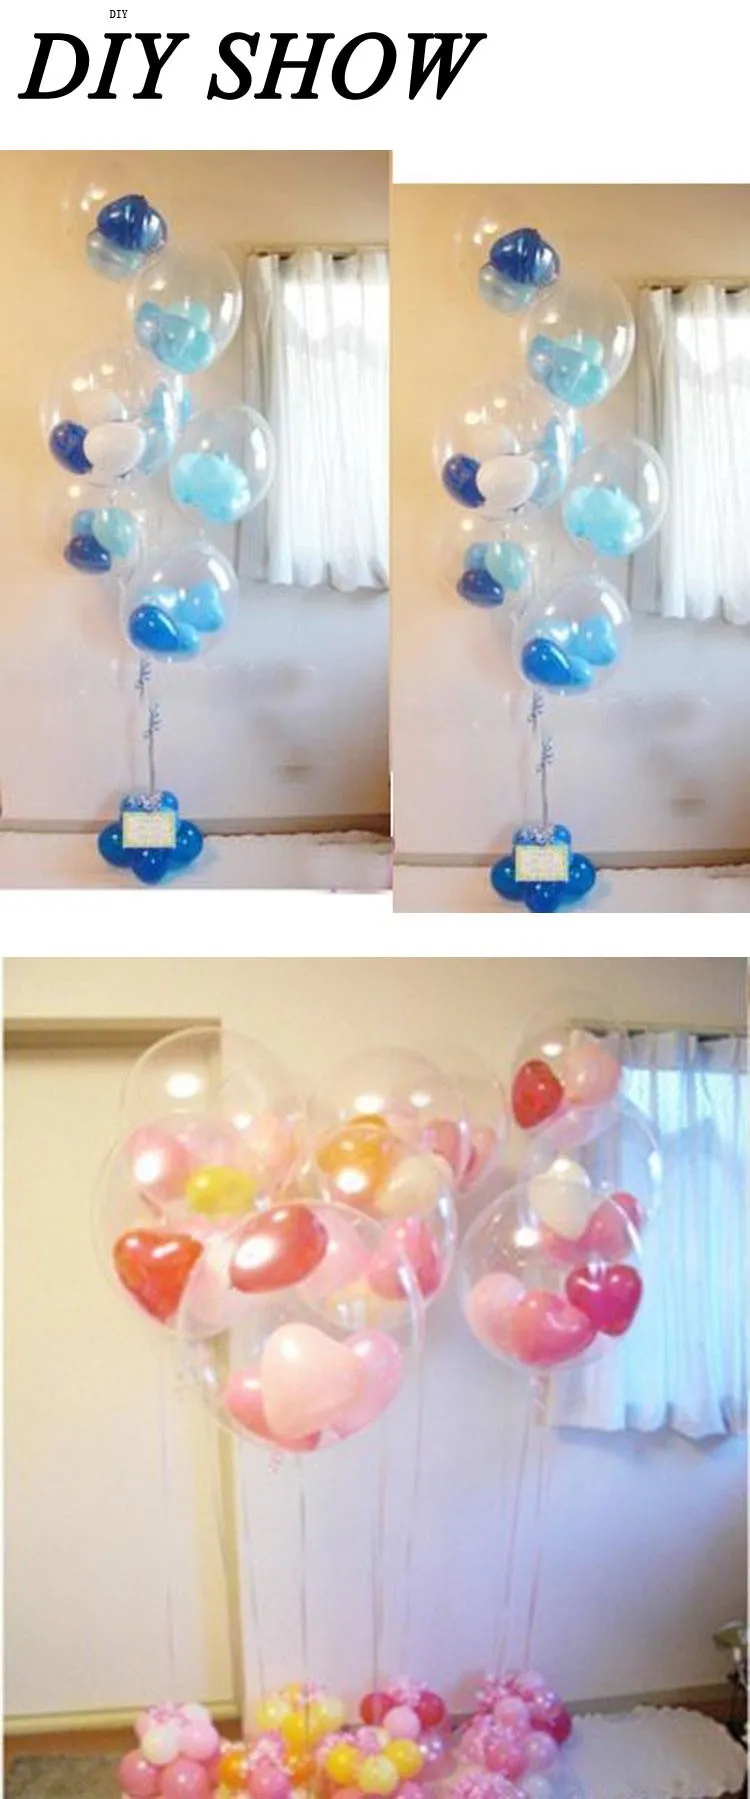 HAOCHU 20 штук 12 дюймов прозрачные воздушные шары резиновый шарик для aniversario одежда для свадьбы, дня рождения украшения детские игрушки